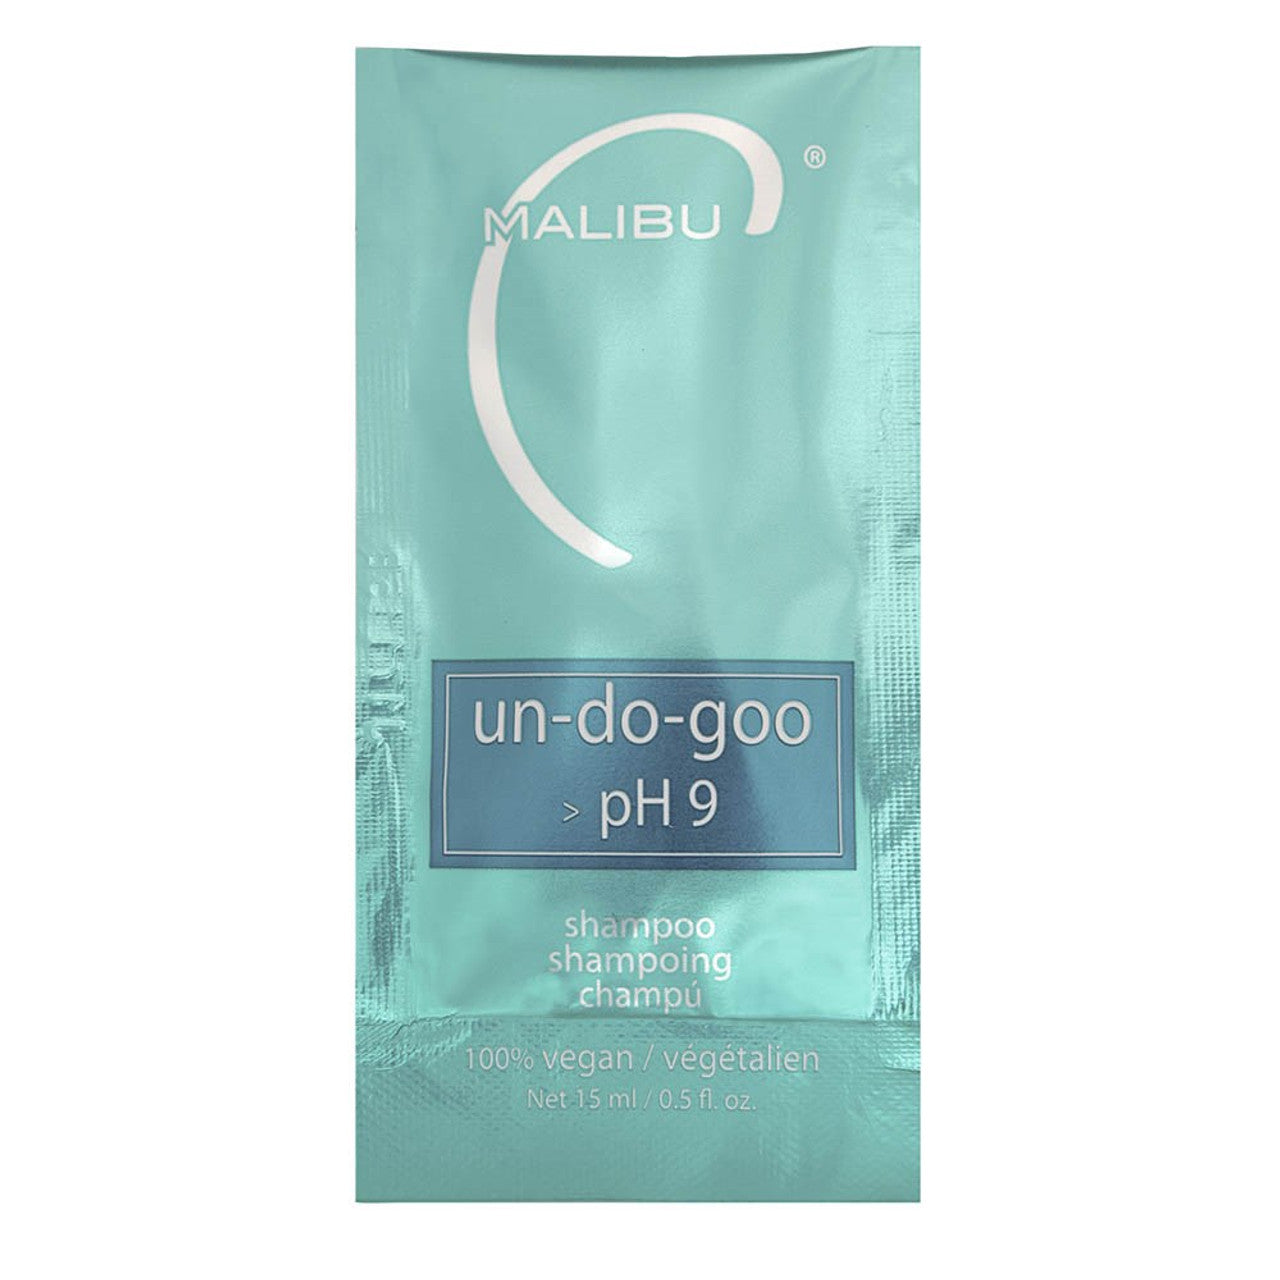 Malibu C Un-Do-Goo Shampoo 15ml Sachet